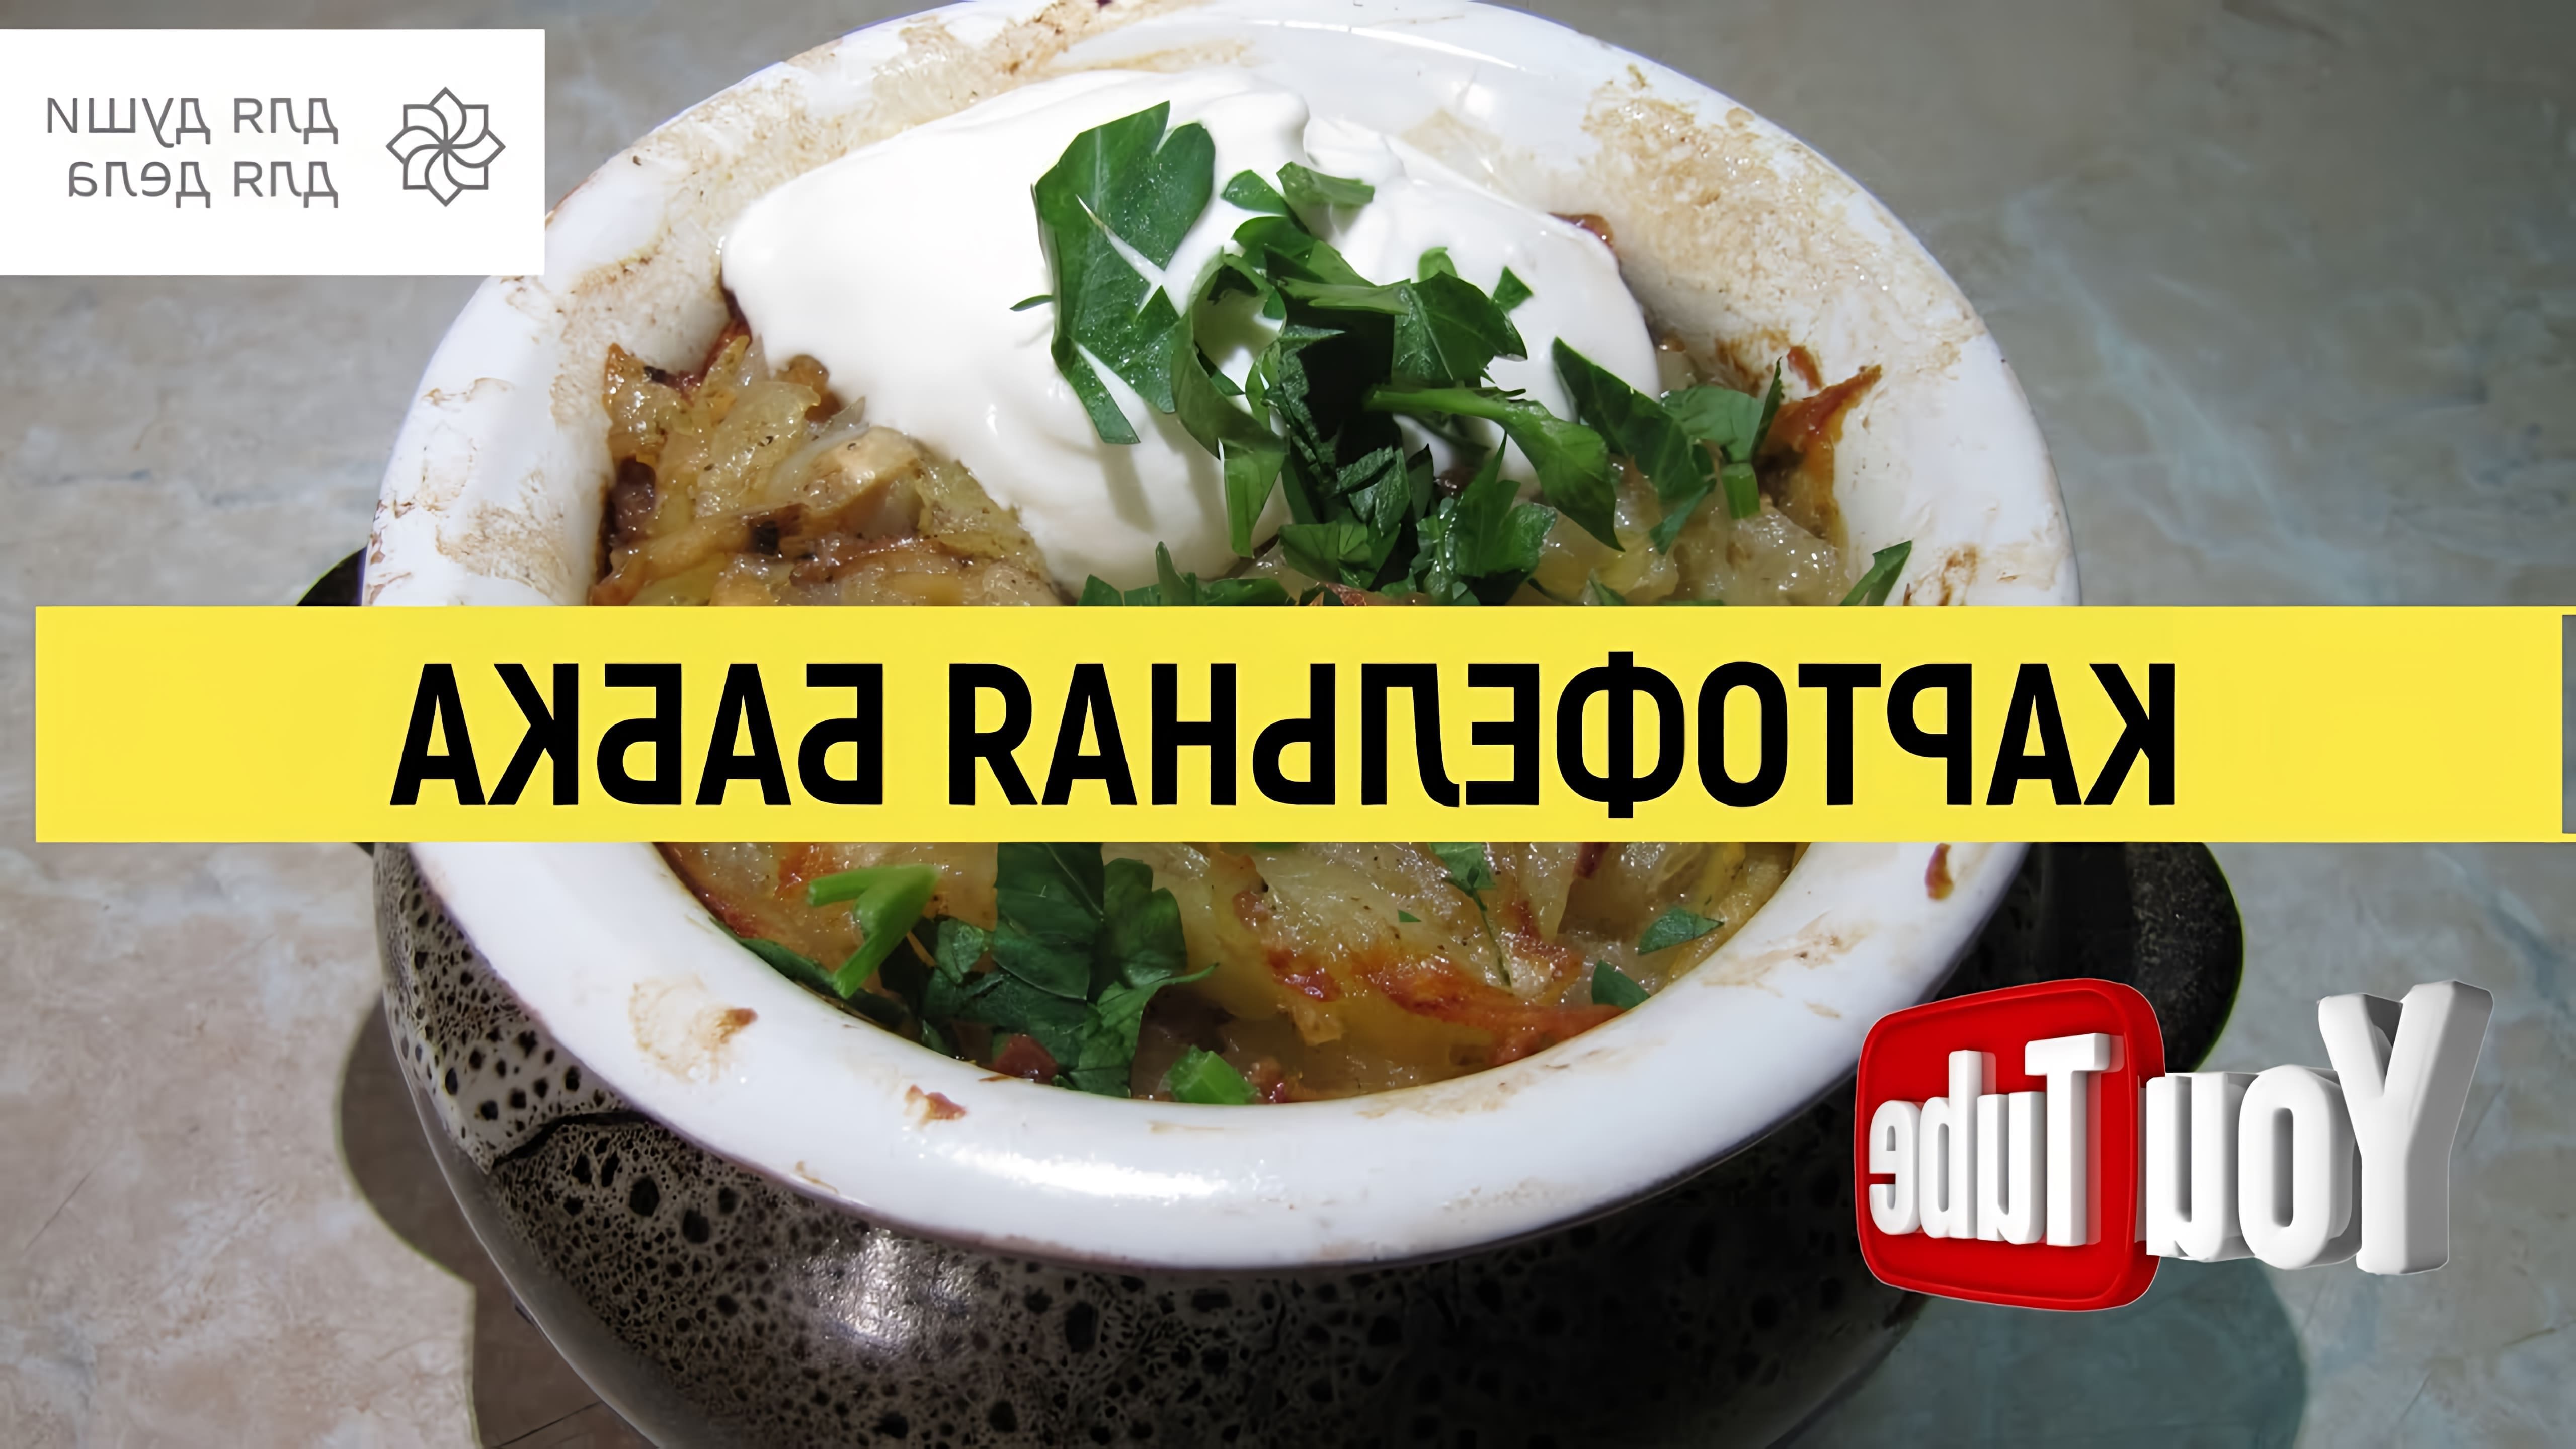 В этом видео демонстрируется рецепт приготовления картофельной бабки